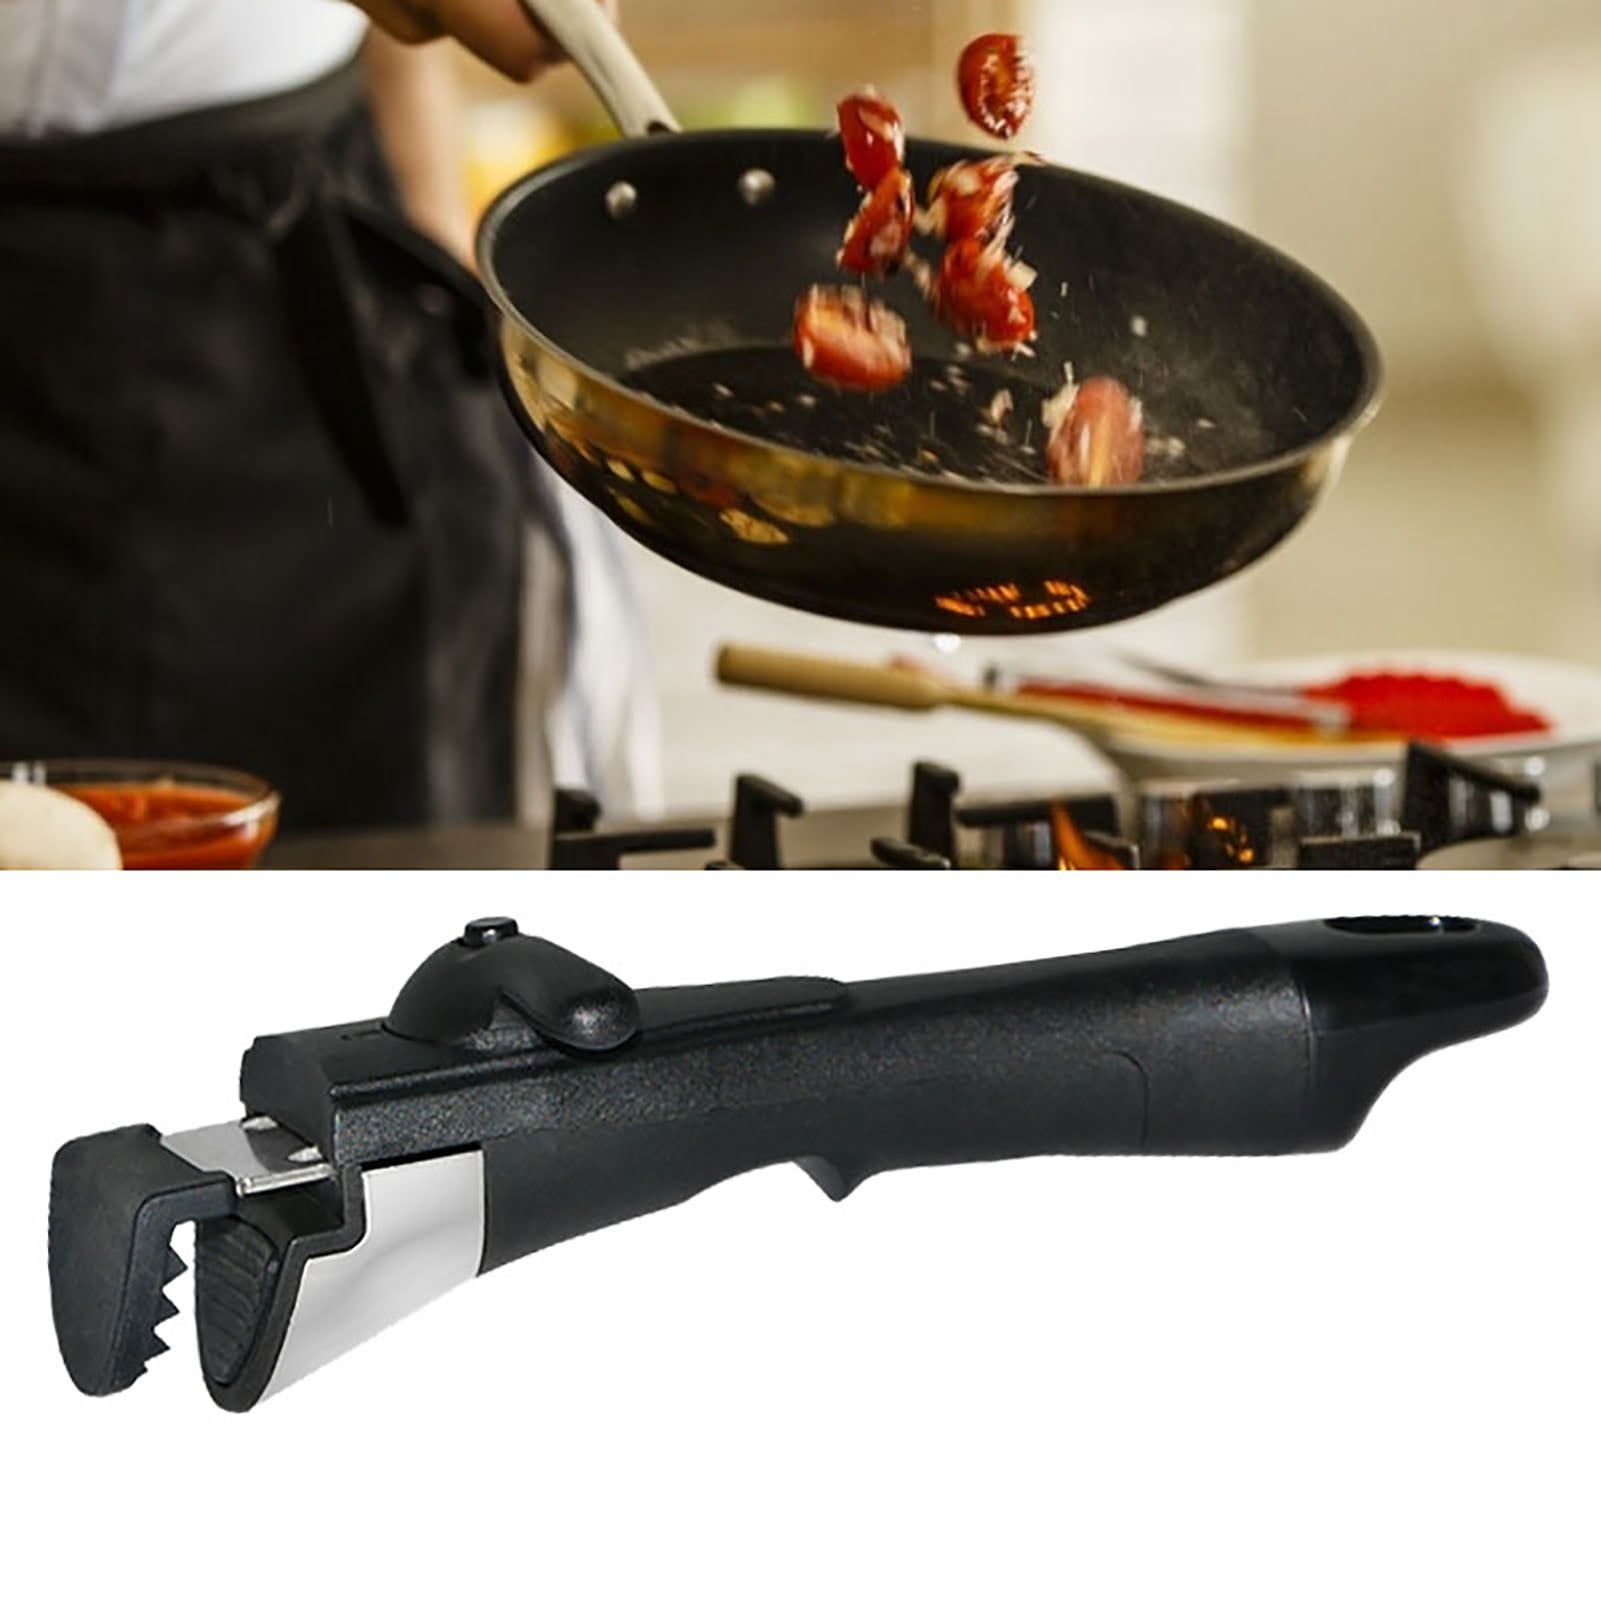 1-3Pcs Removable Detachable Pan Handle Pot Dismountable Clip Grip Handle  for Kitchen Frying Pan Clamp